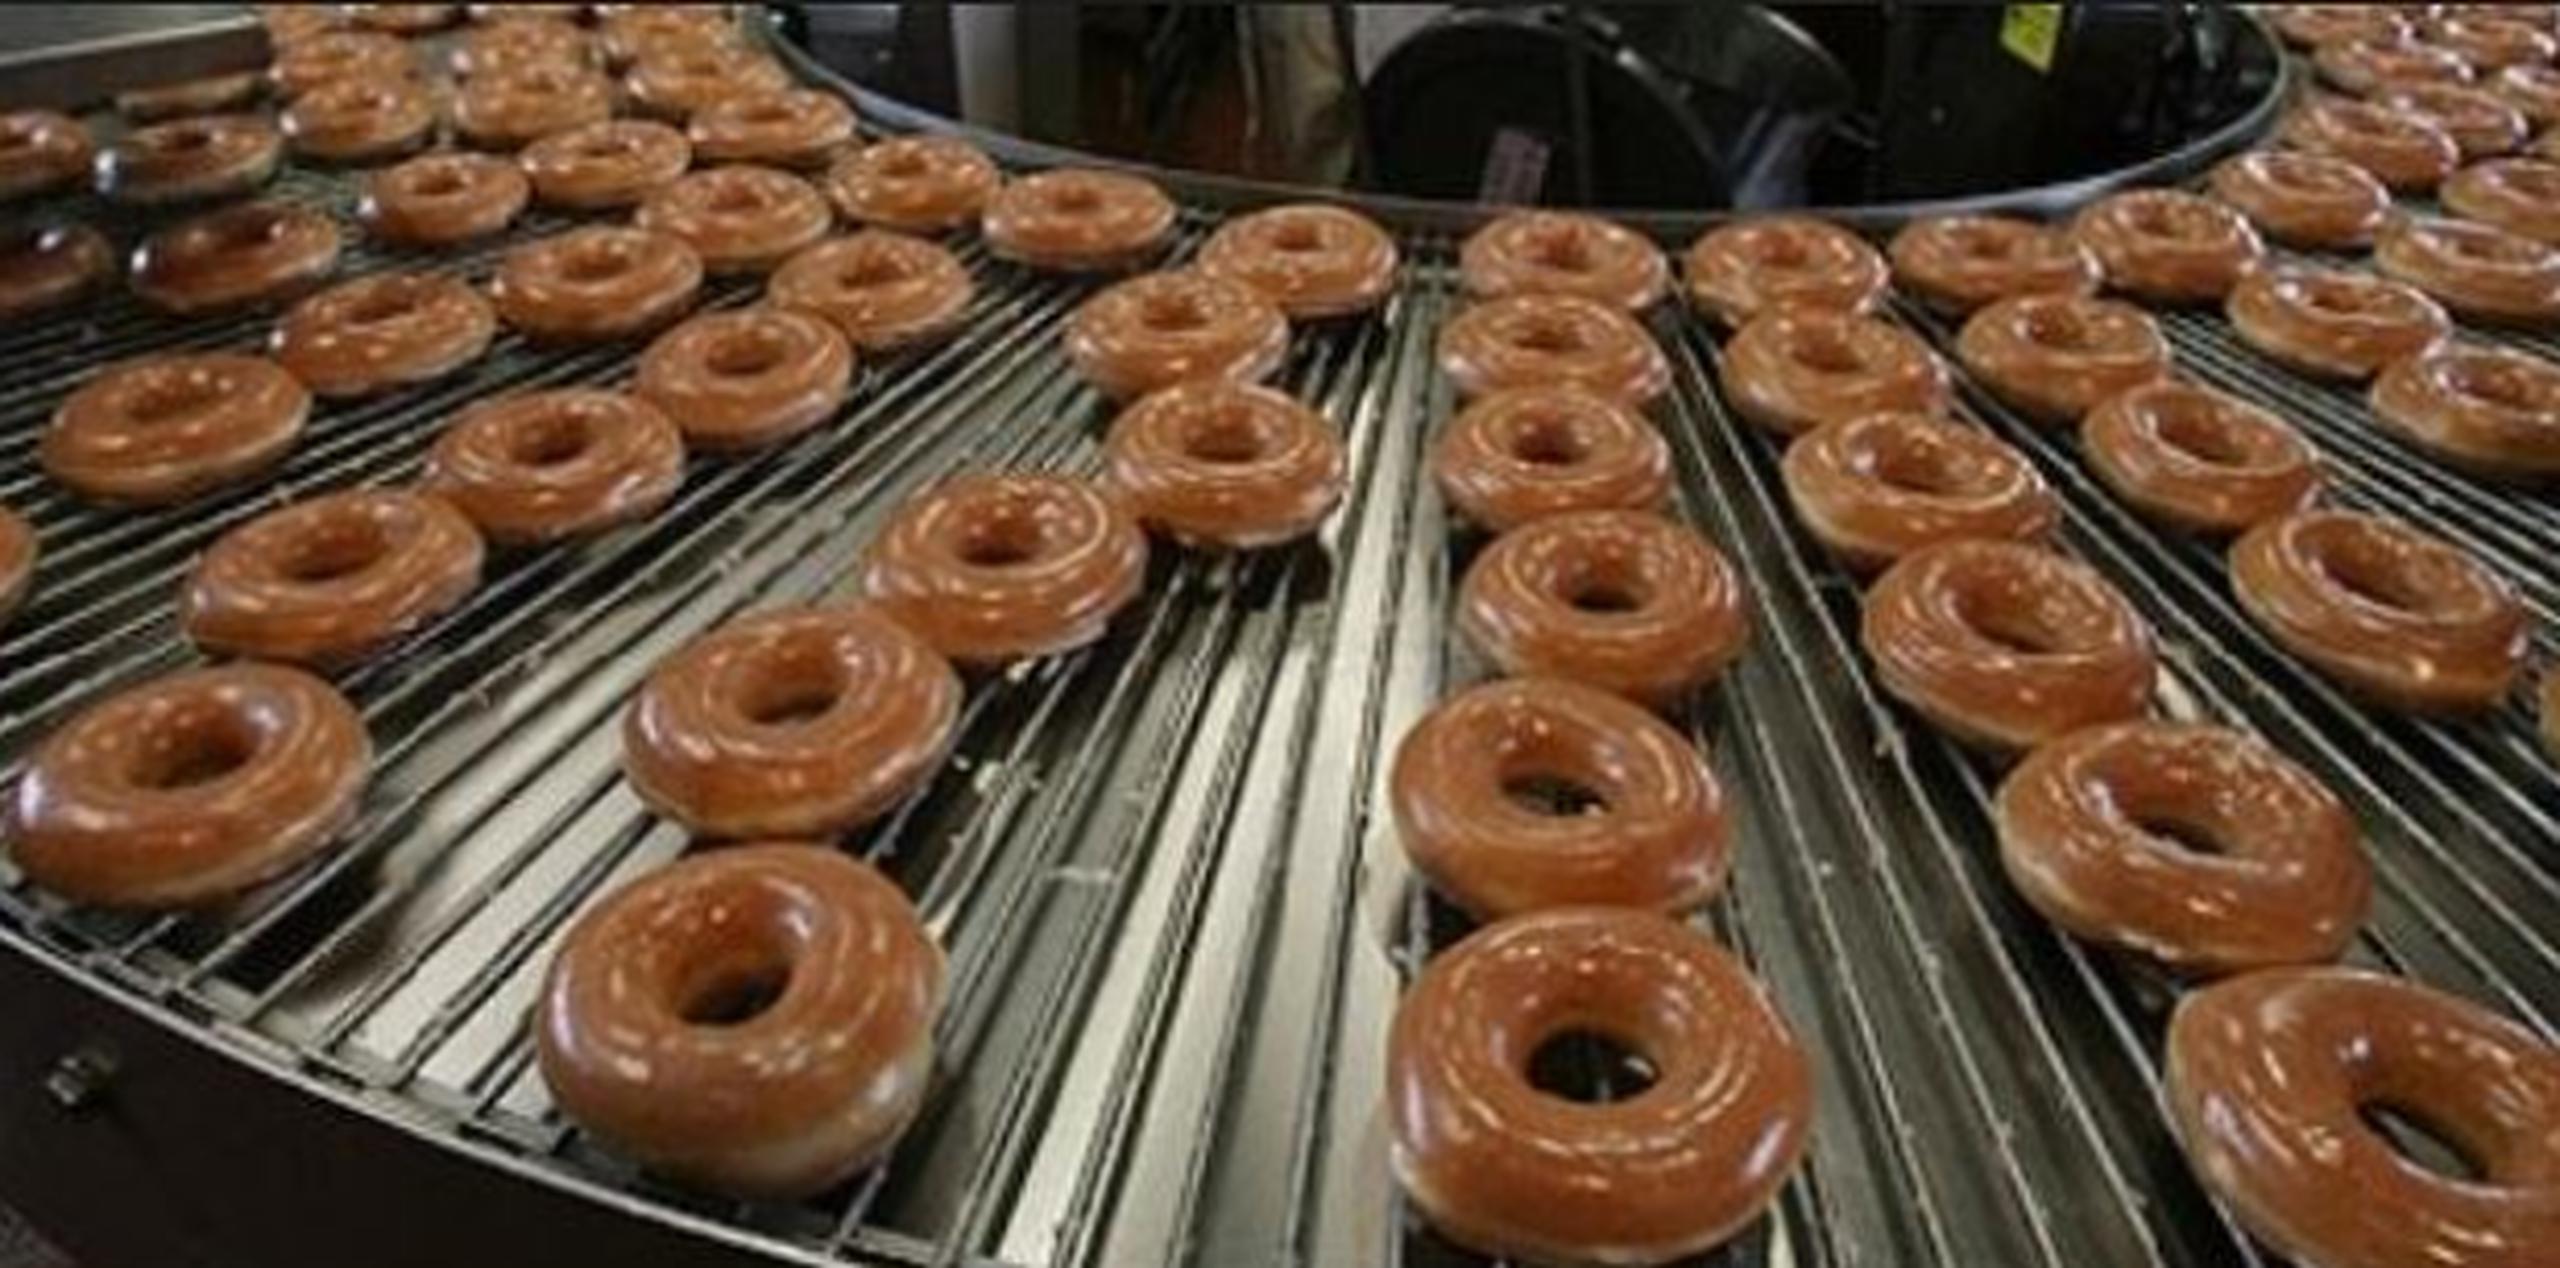 Krispy Kreme fue fundada en 1937 y cuenta en la actualidad con un total de 1,100 establecimientos repartidos por más de 26 países en todo el mundo. (Archivo)